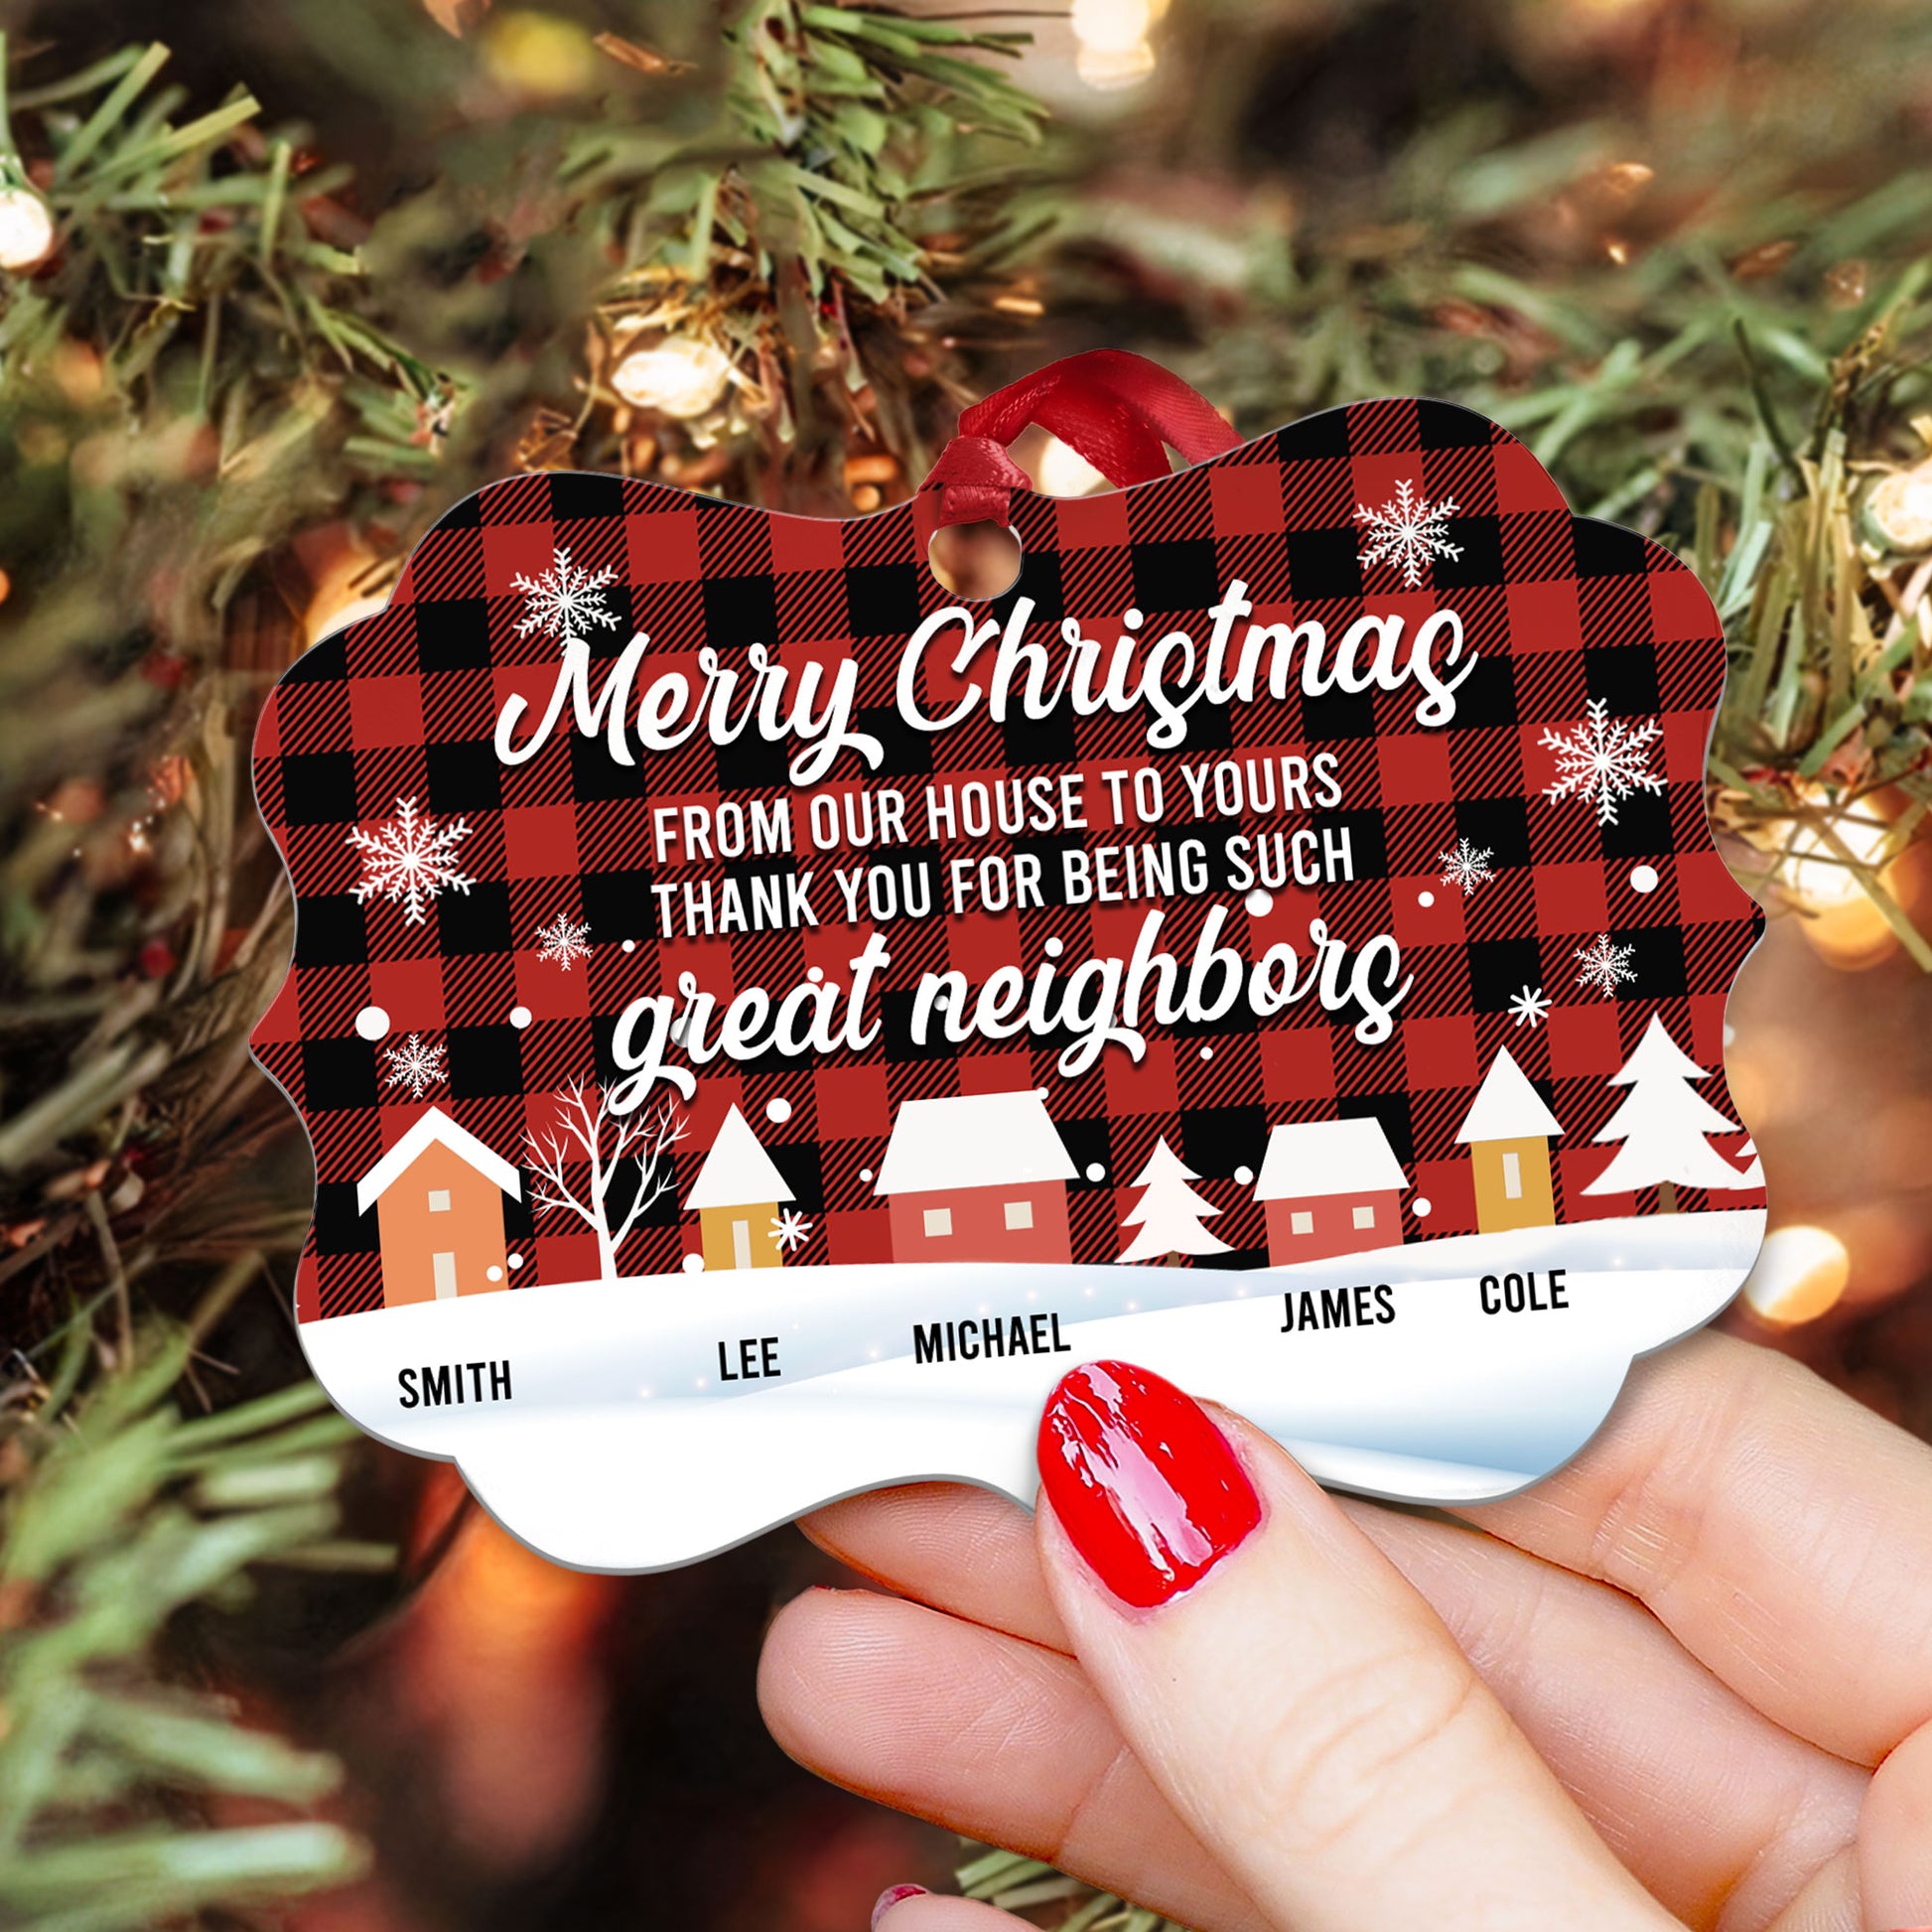 Neighbor Christmas Ornament, Christmas Gift for Neighbor, Best